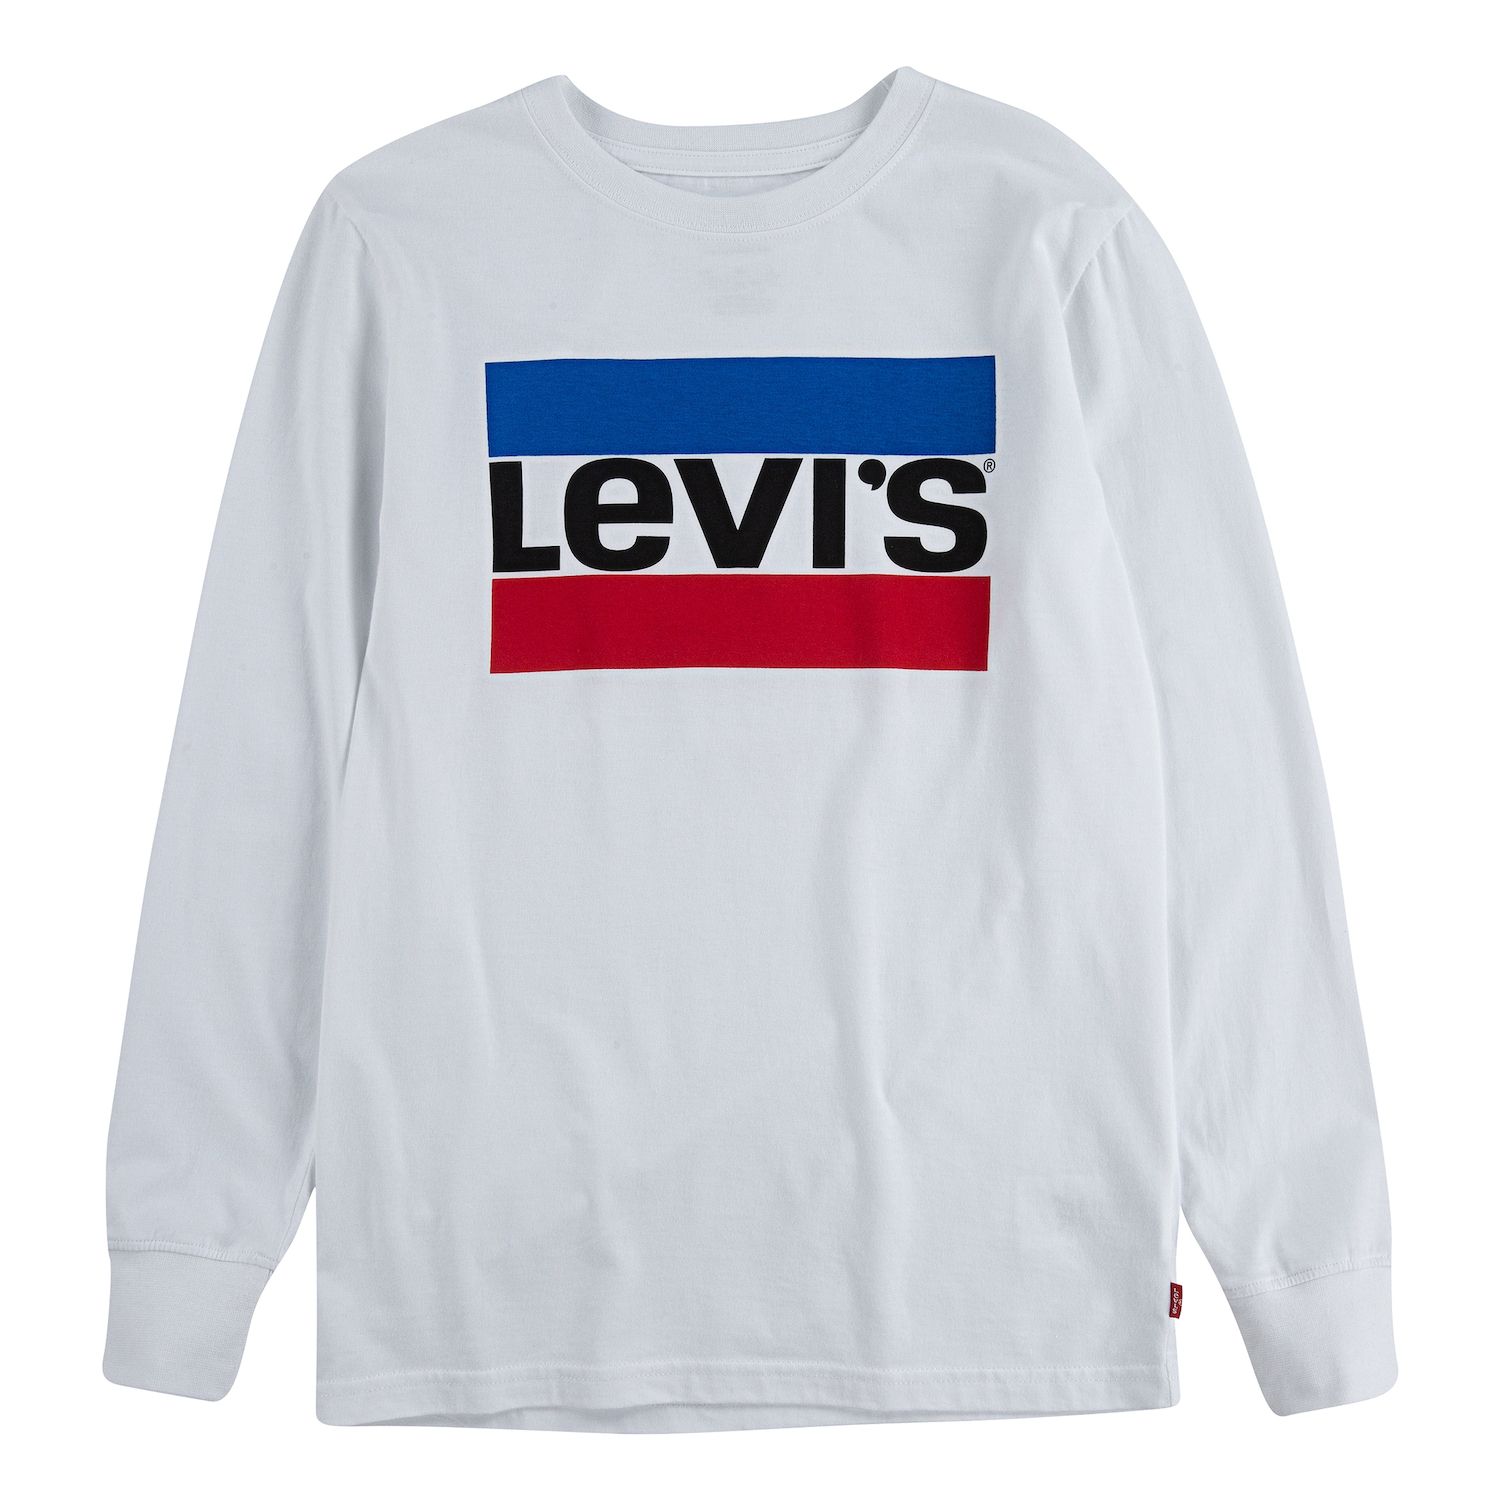 levis tshirt boys